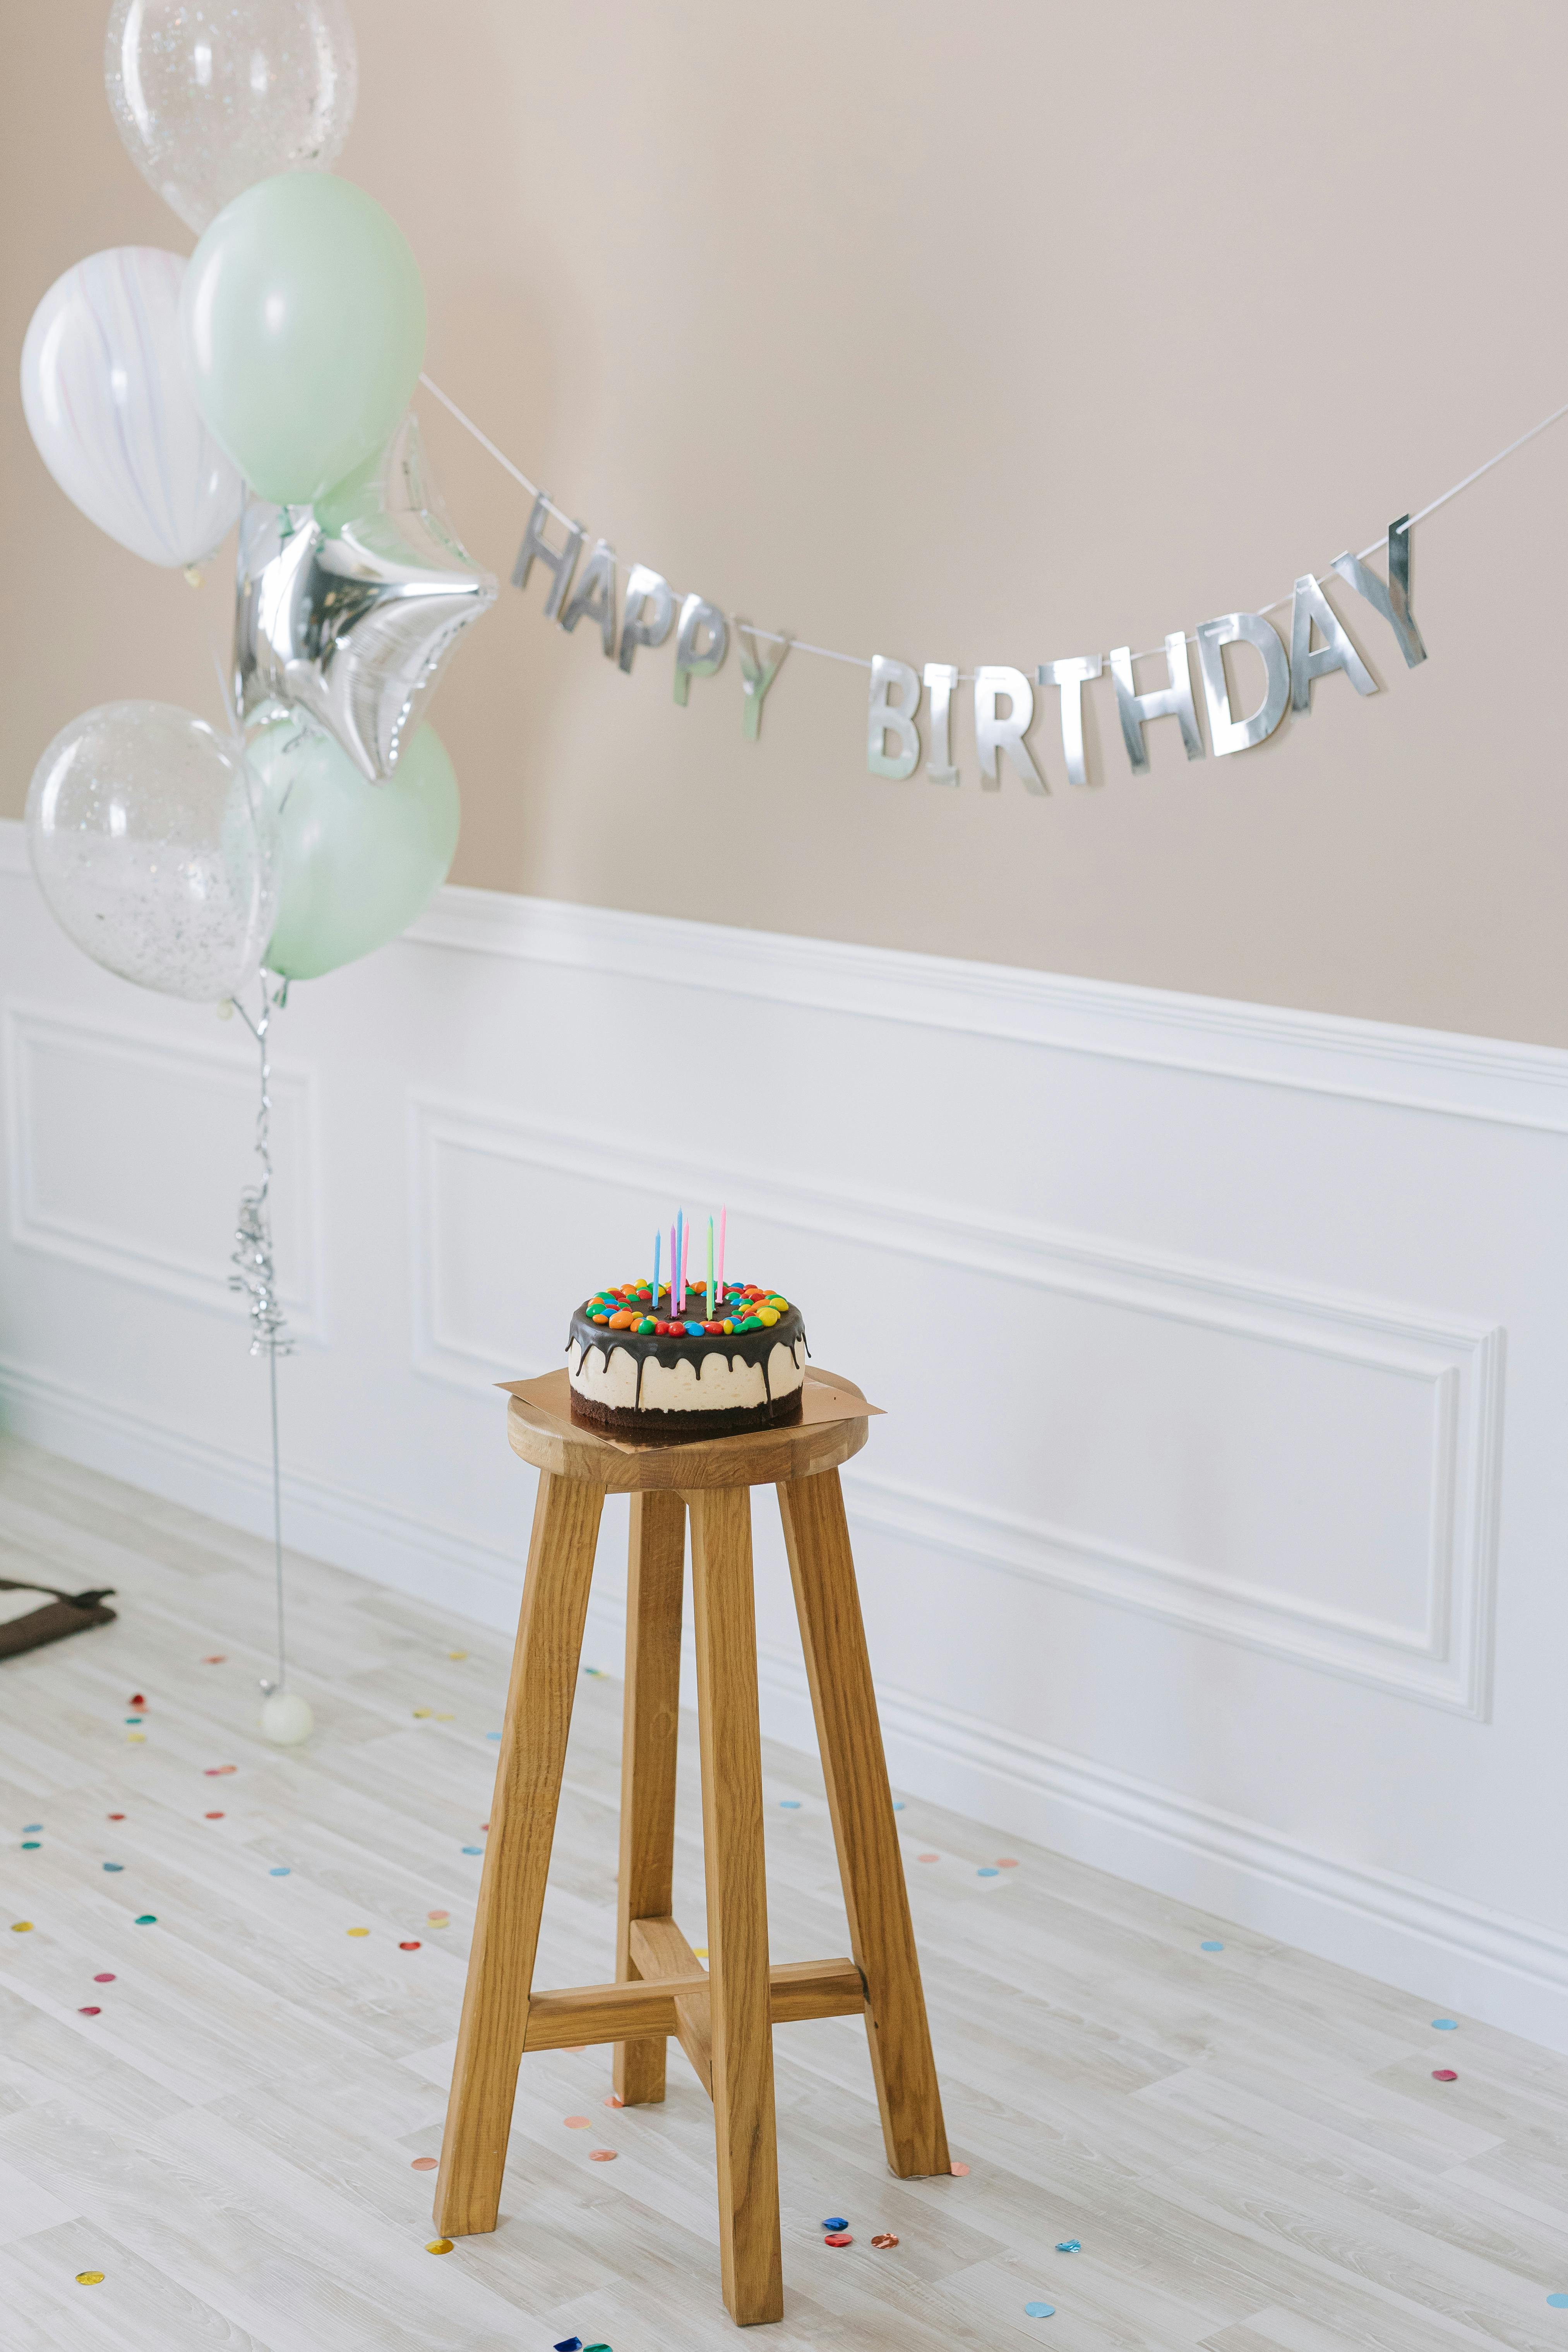 Décorations d'anniversaire | Source : Pexels